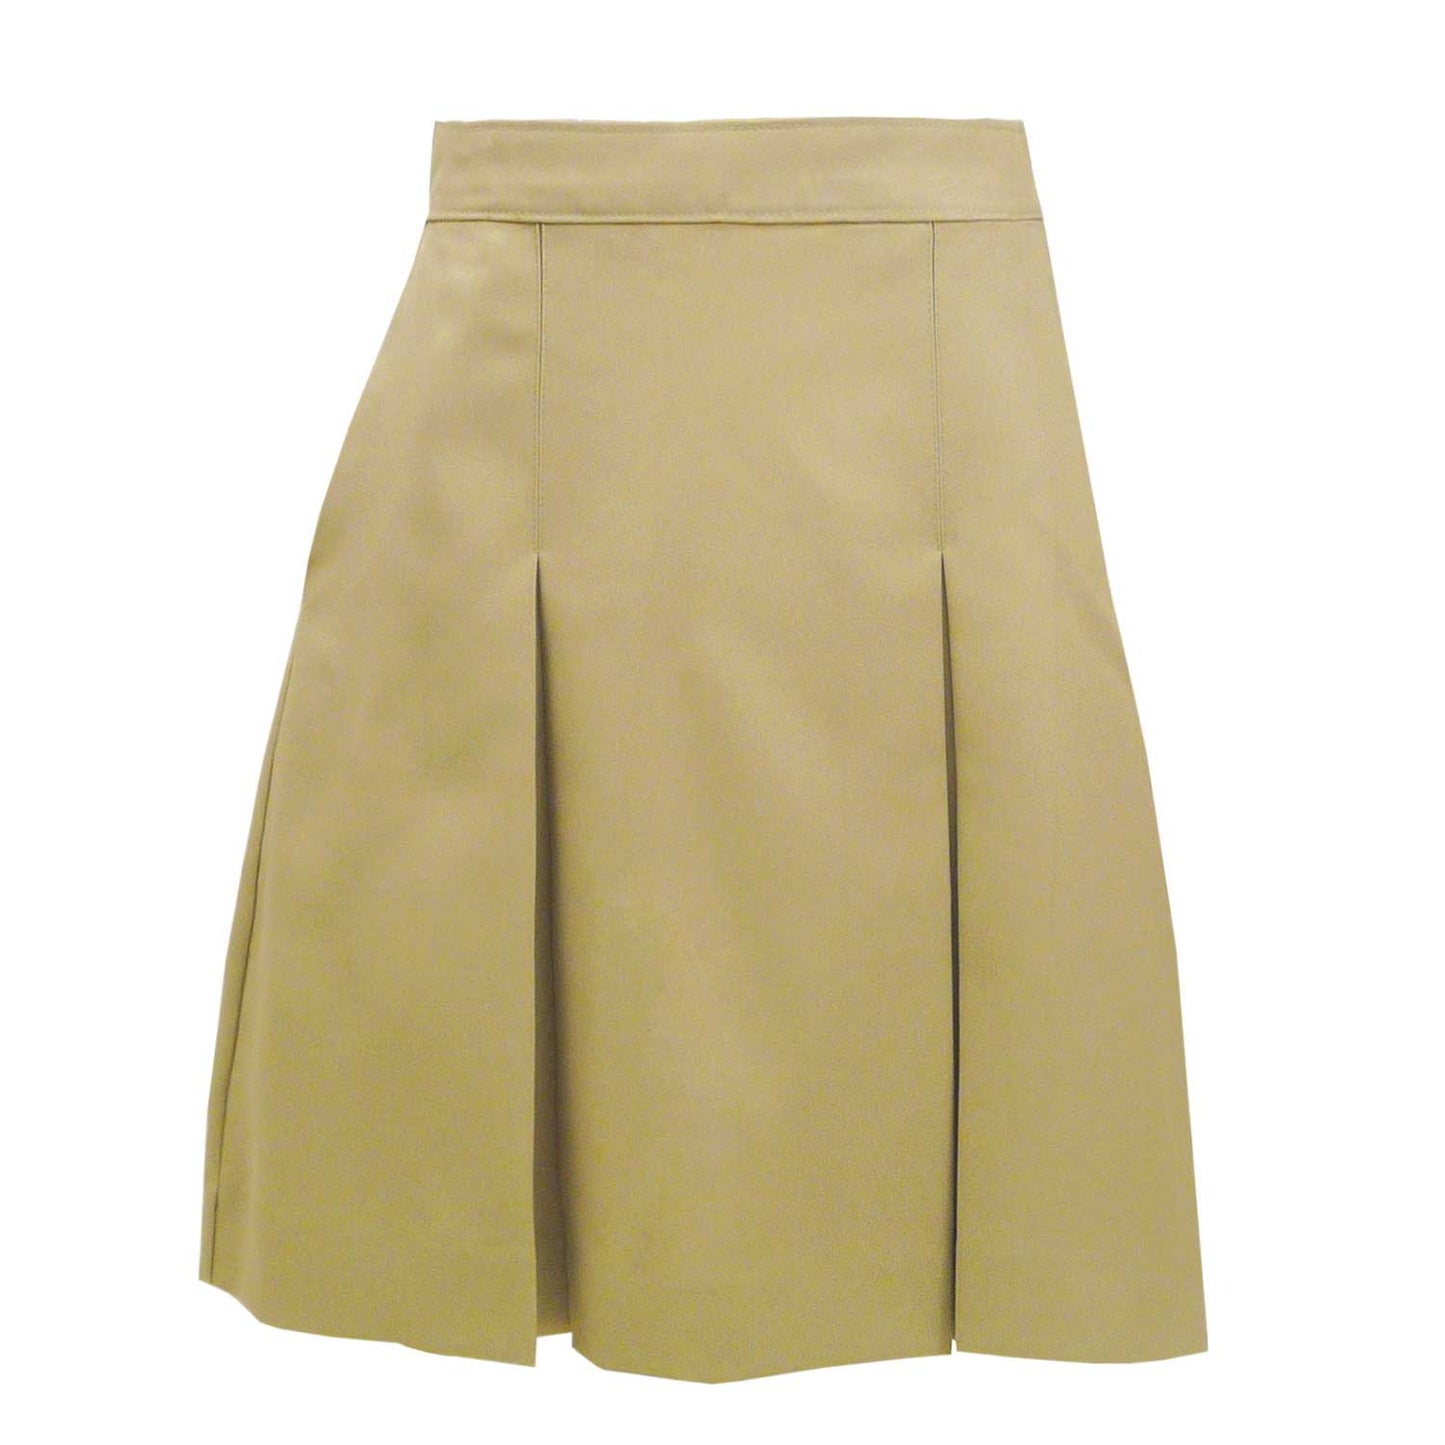 Skirt Model 34 - Blend Solids - 1110